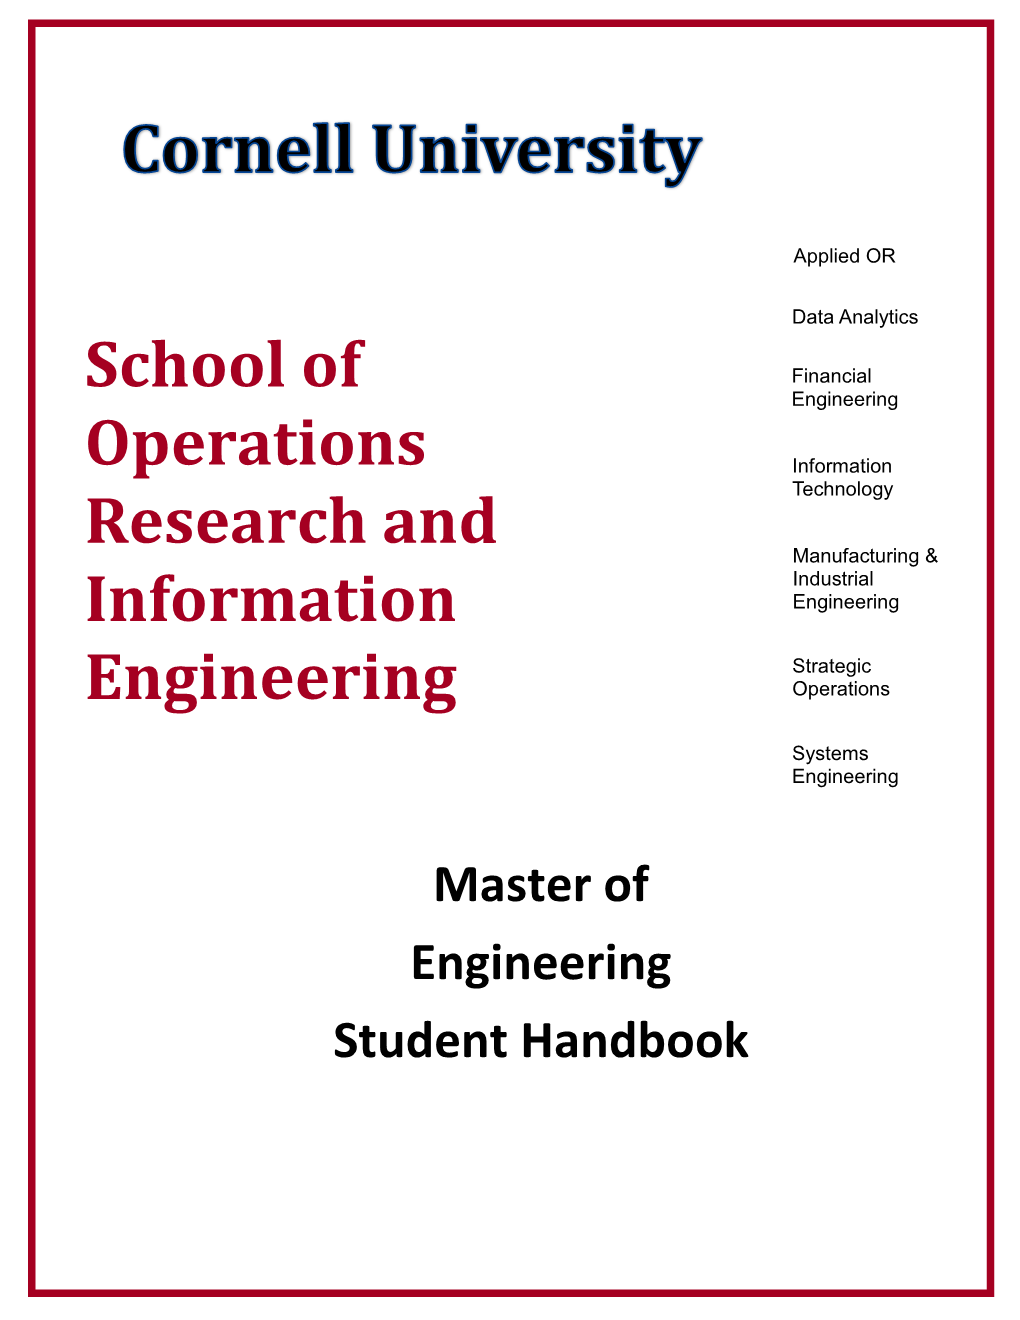 Master of Engineering Student Handbook